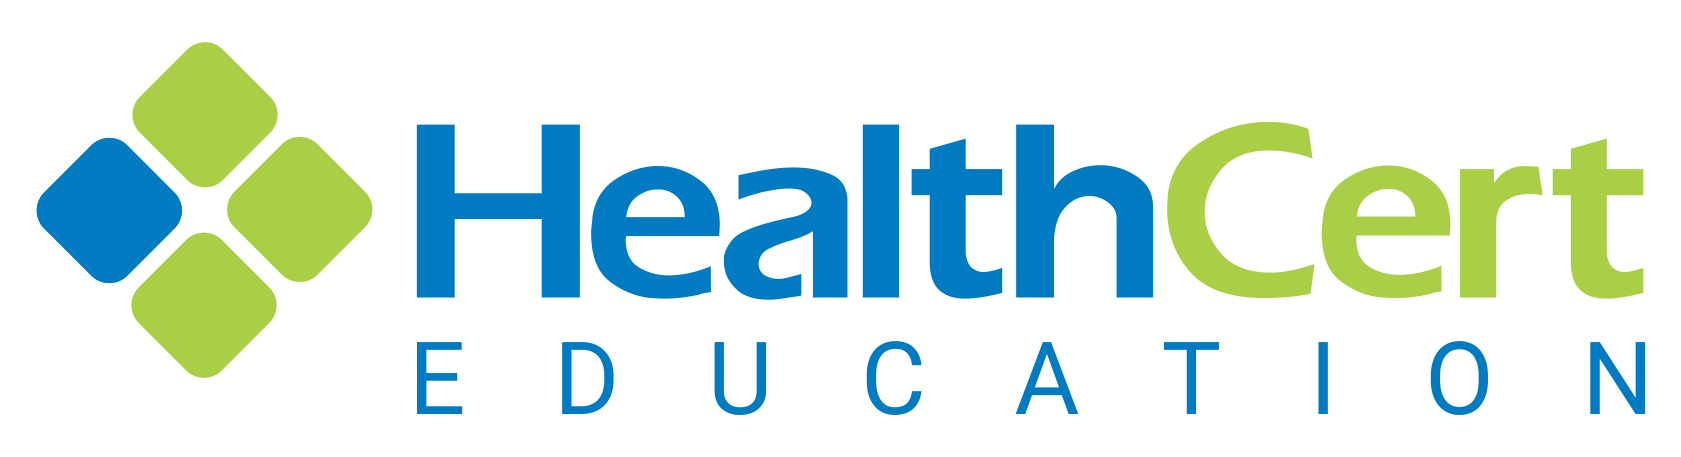 HealthCert-Education